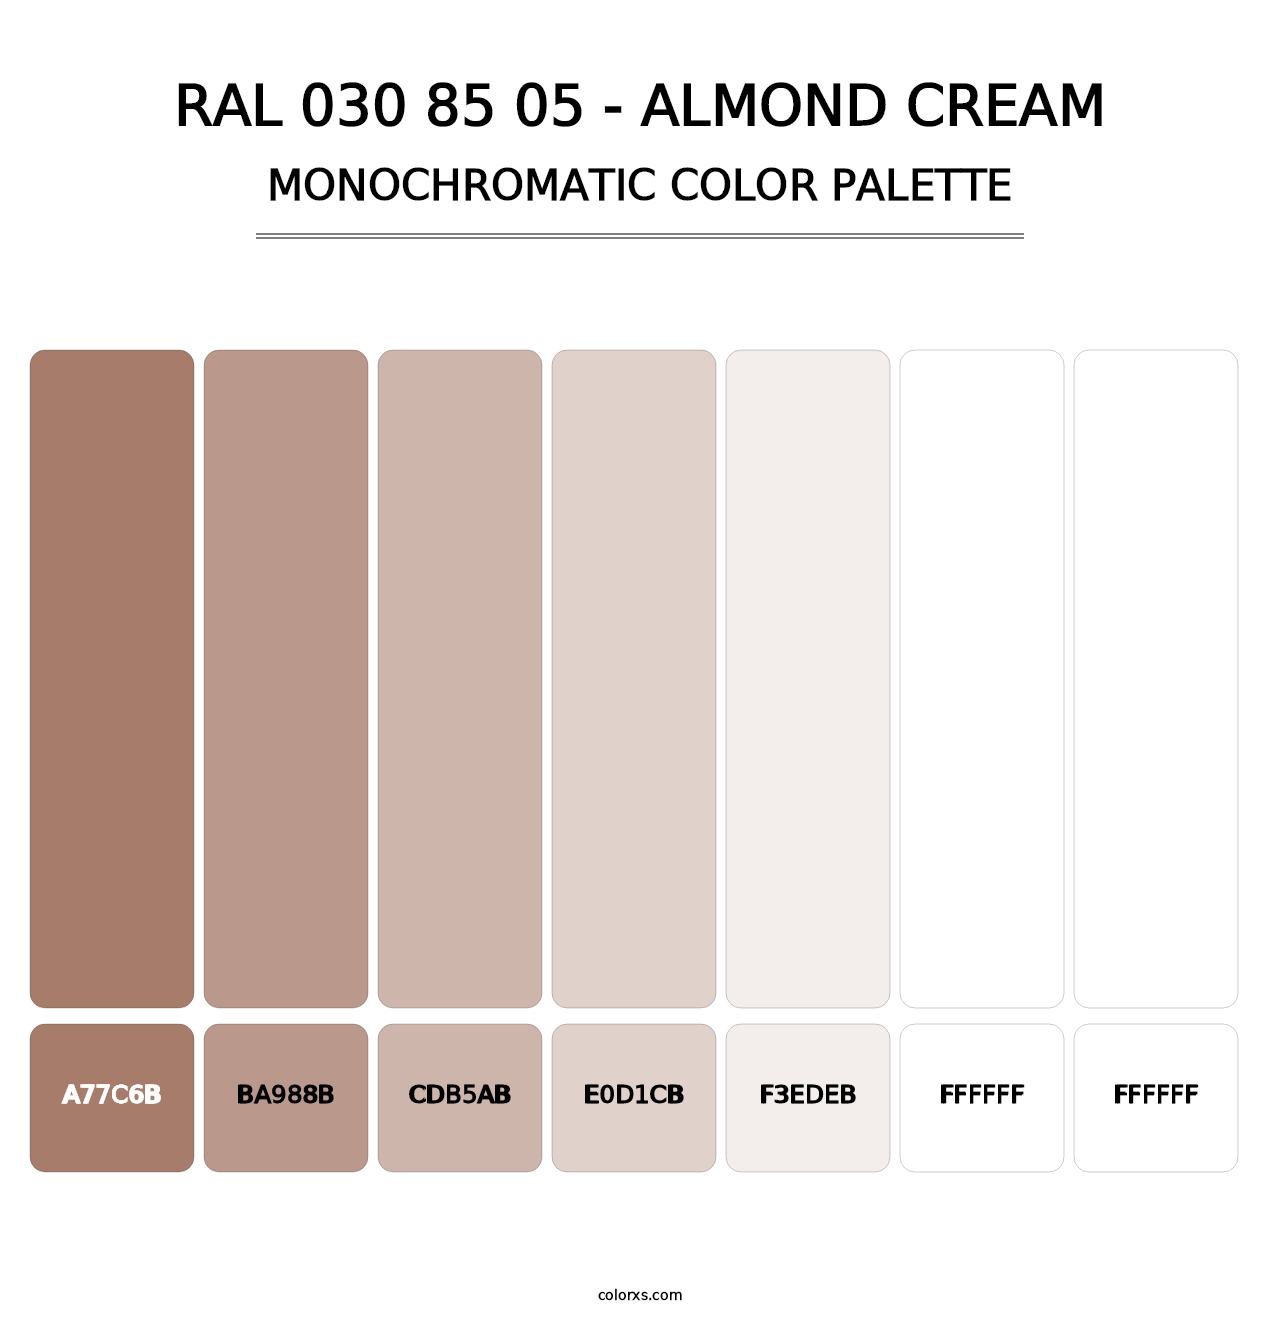 RAL 030 85 05 - Almond Cream - Monochromatic Color Palette